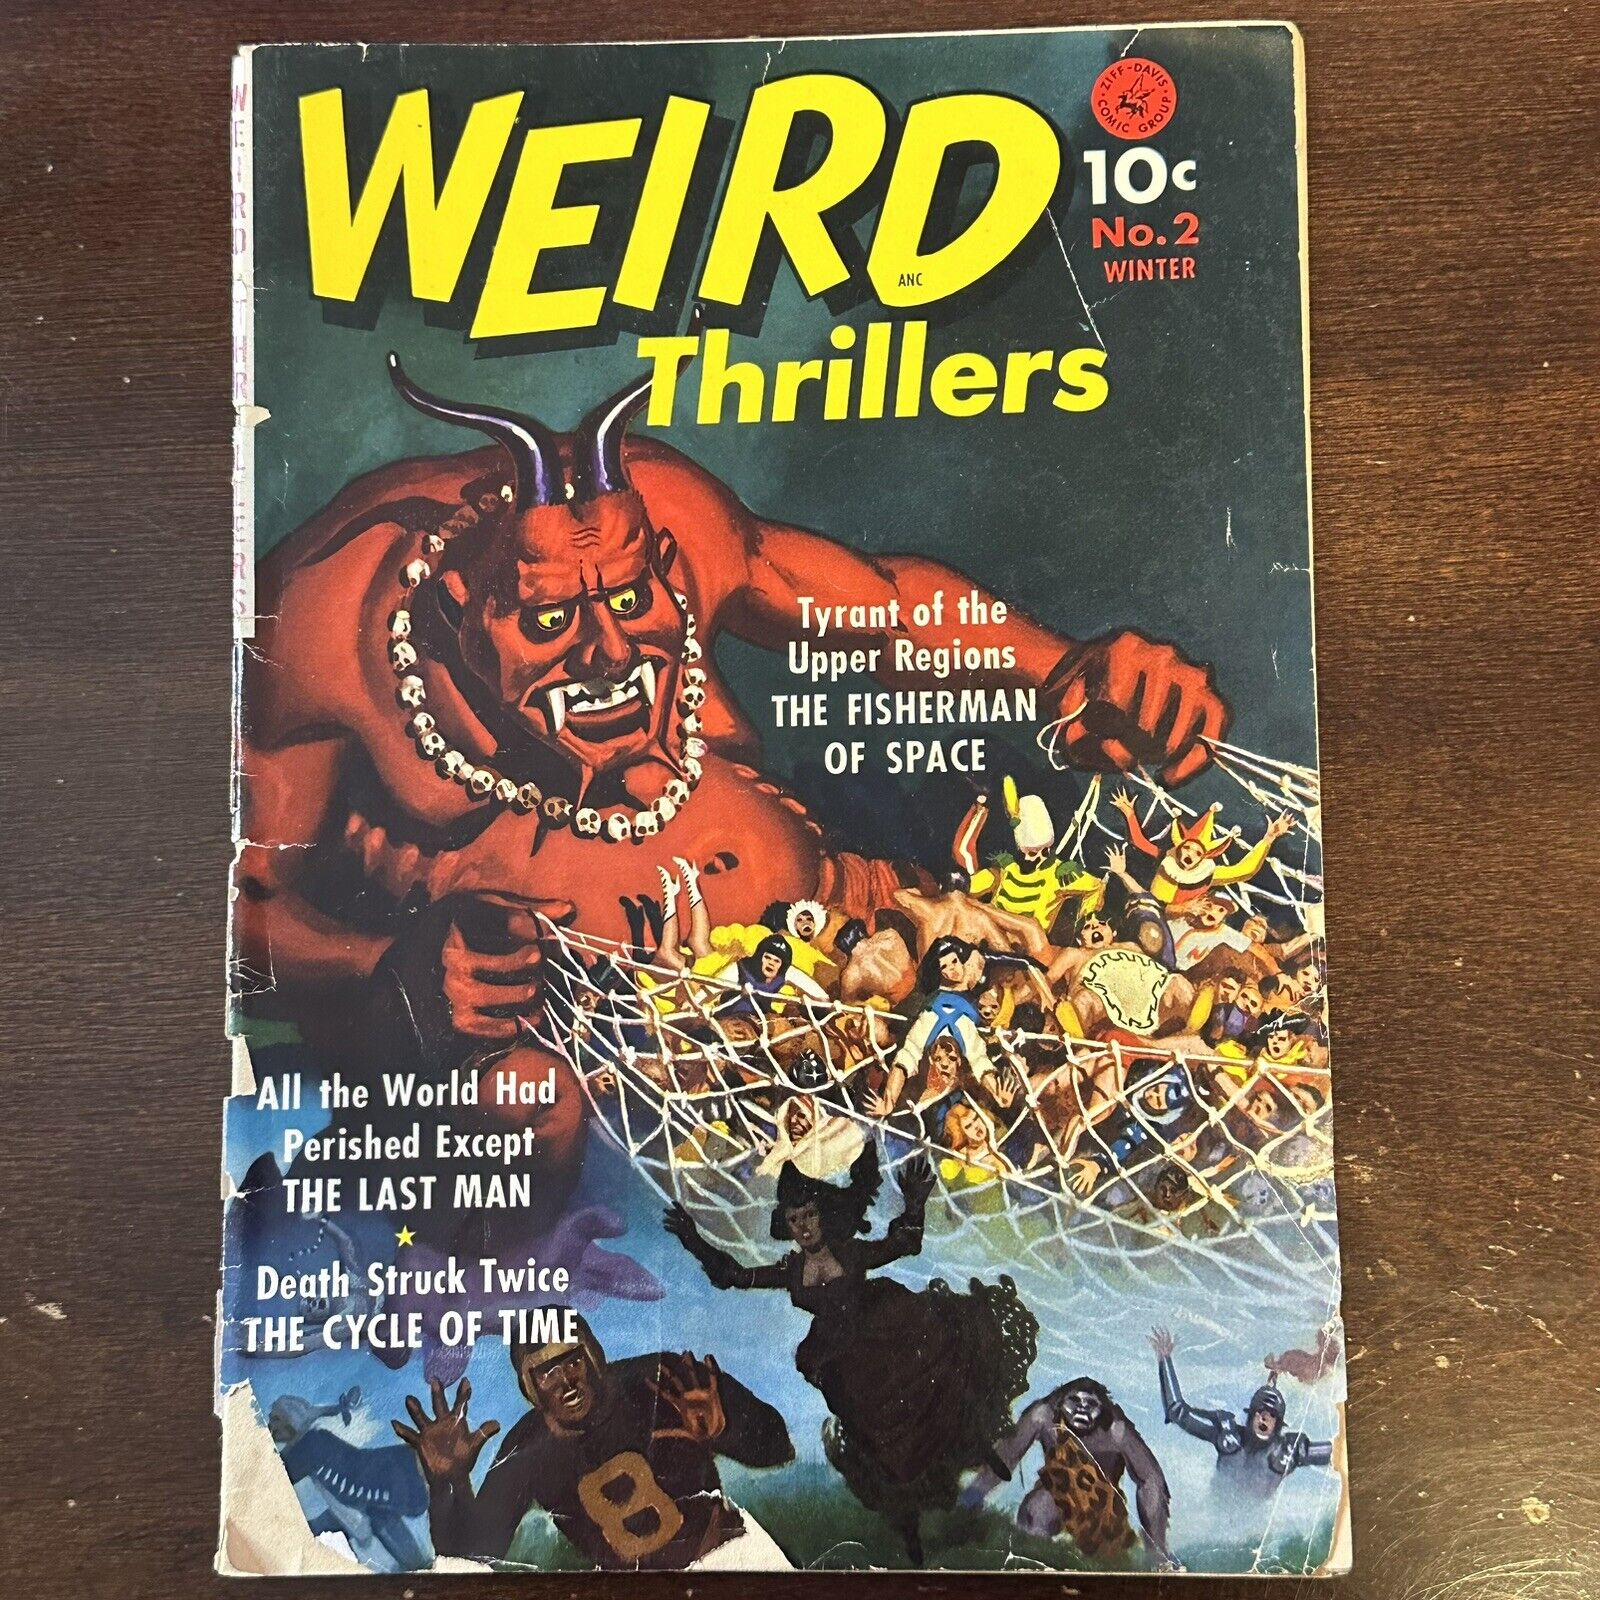 Weird Thrillers #2 (1951) - Golden Age Horror PCH